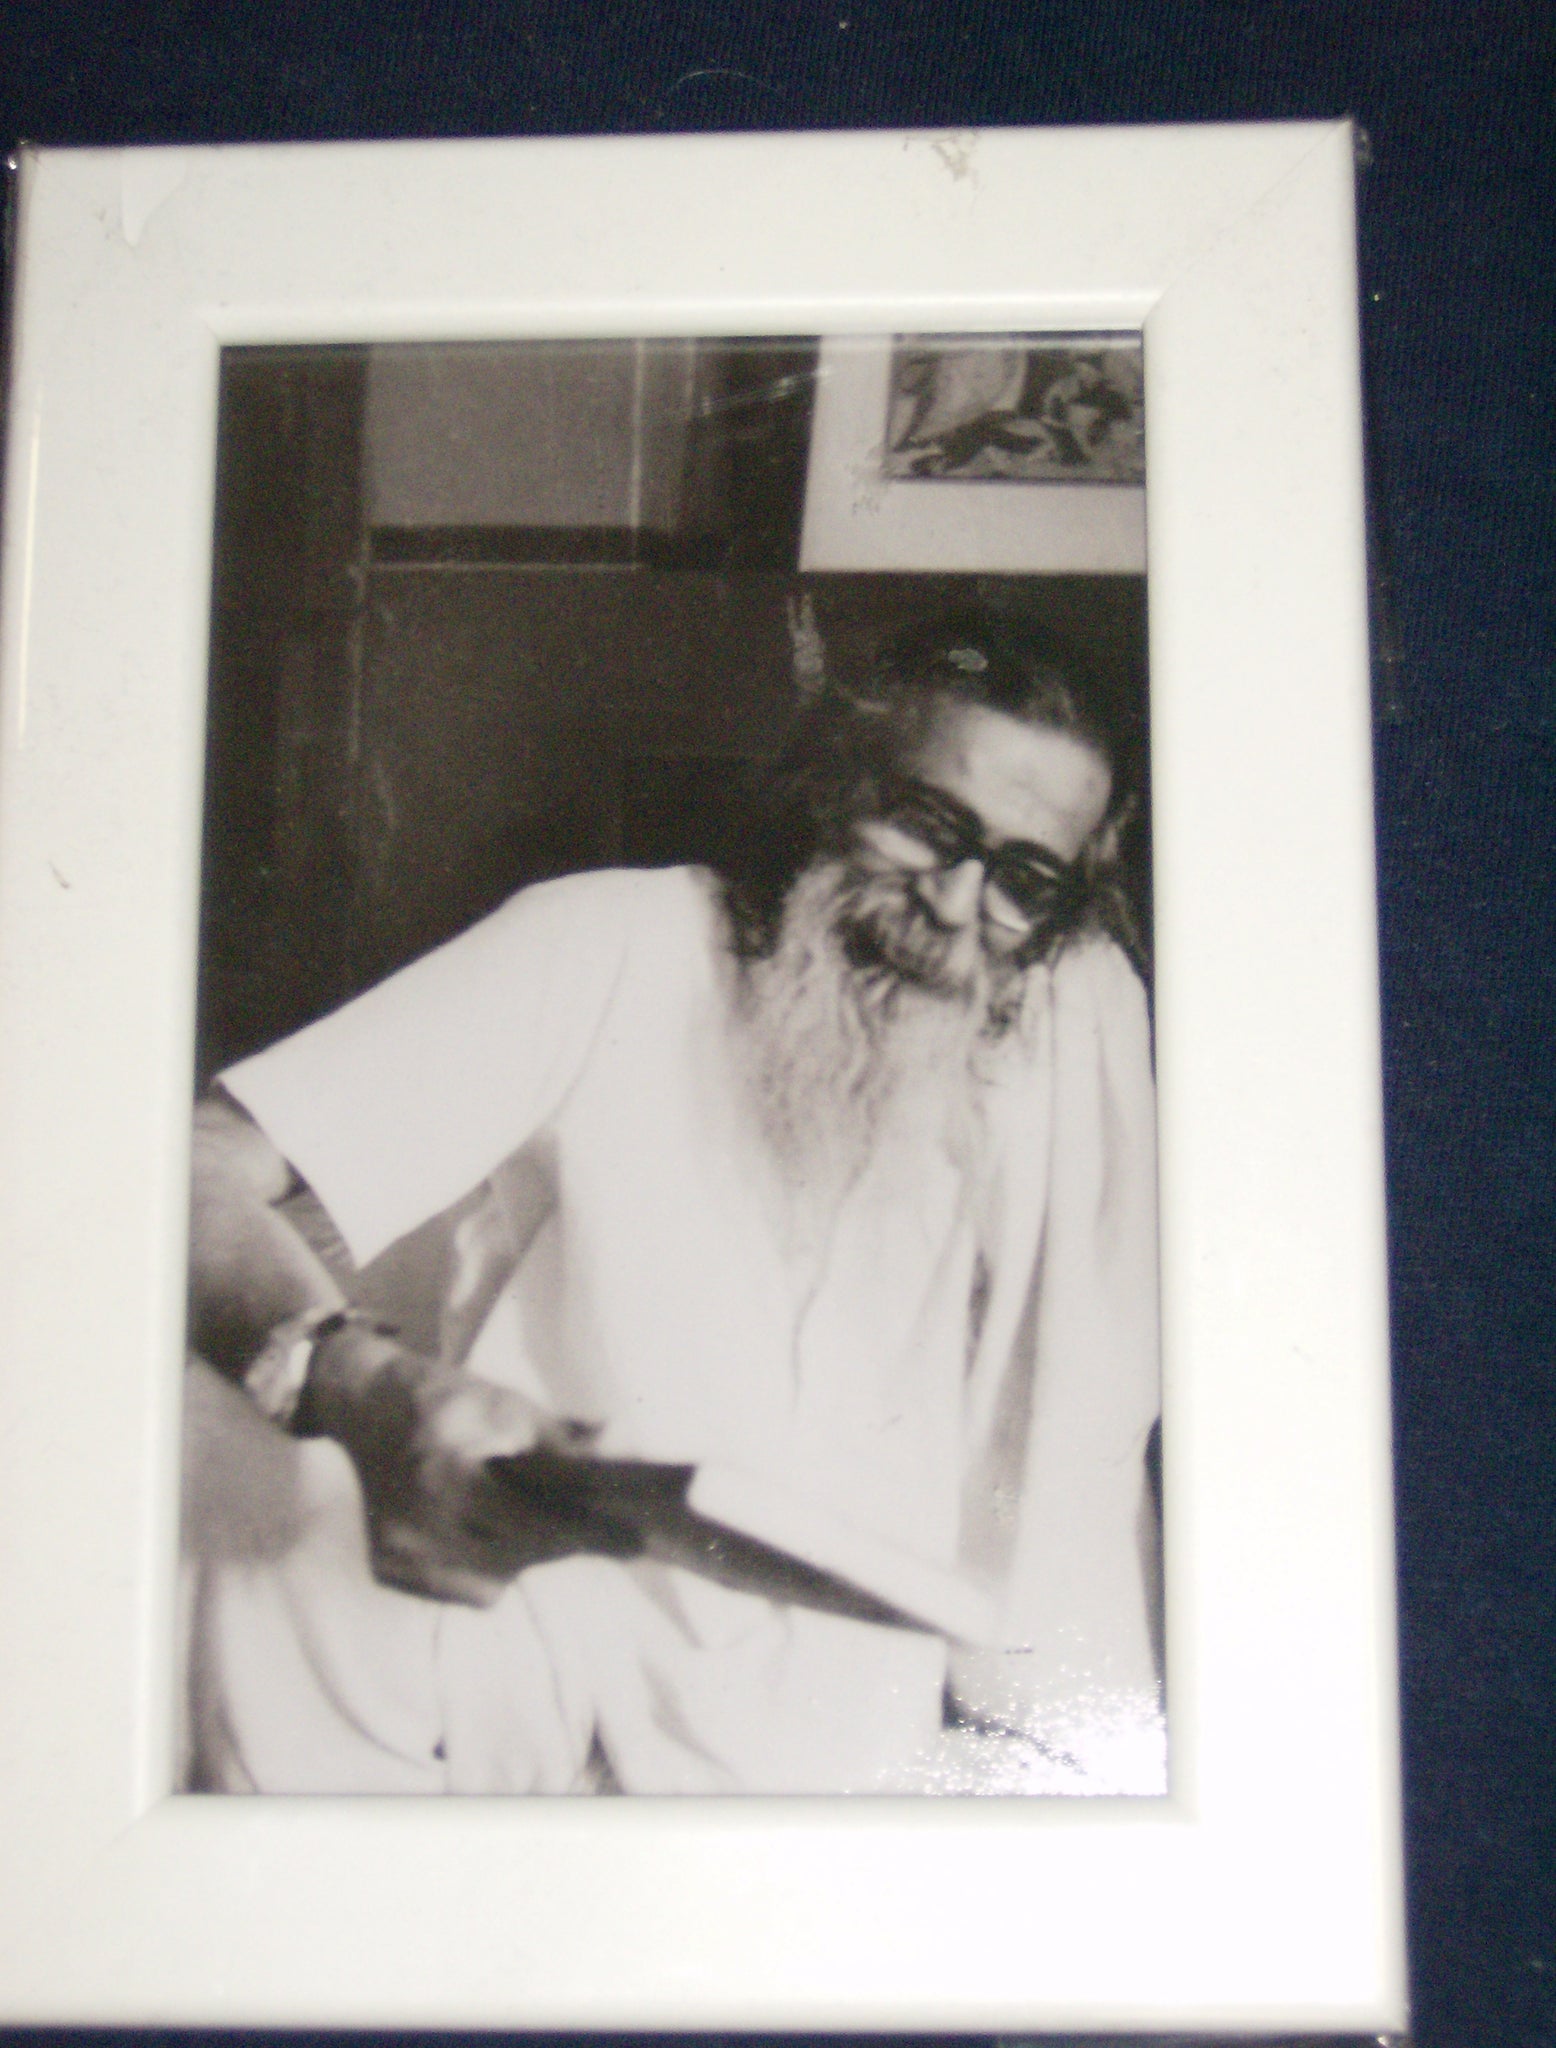 Shri Guruji - Photos